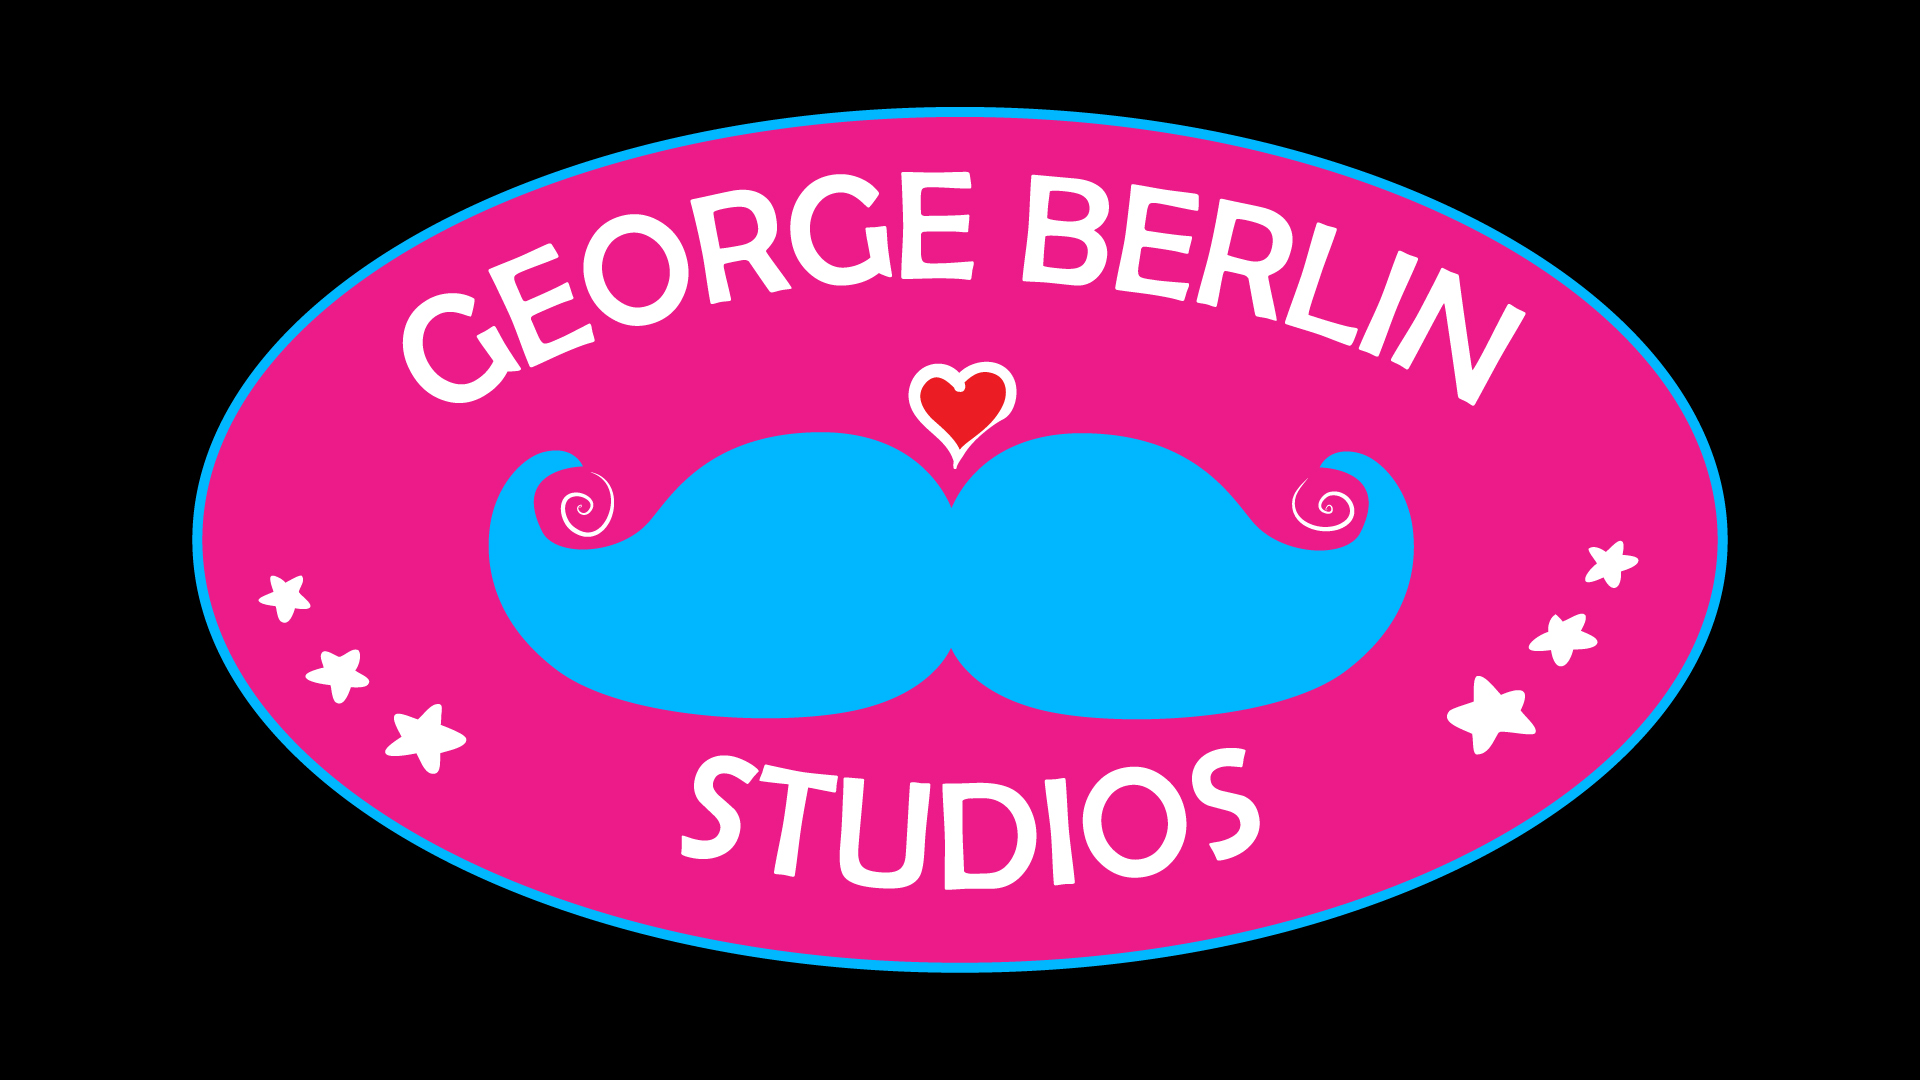 George Berlin Studios 